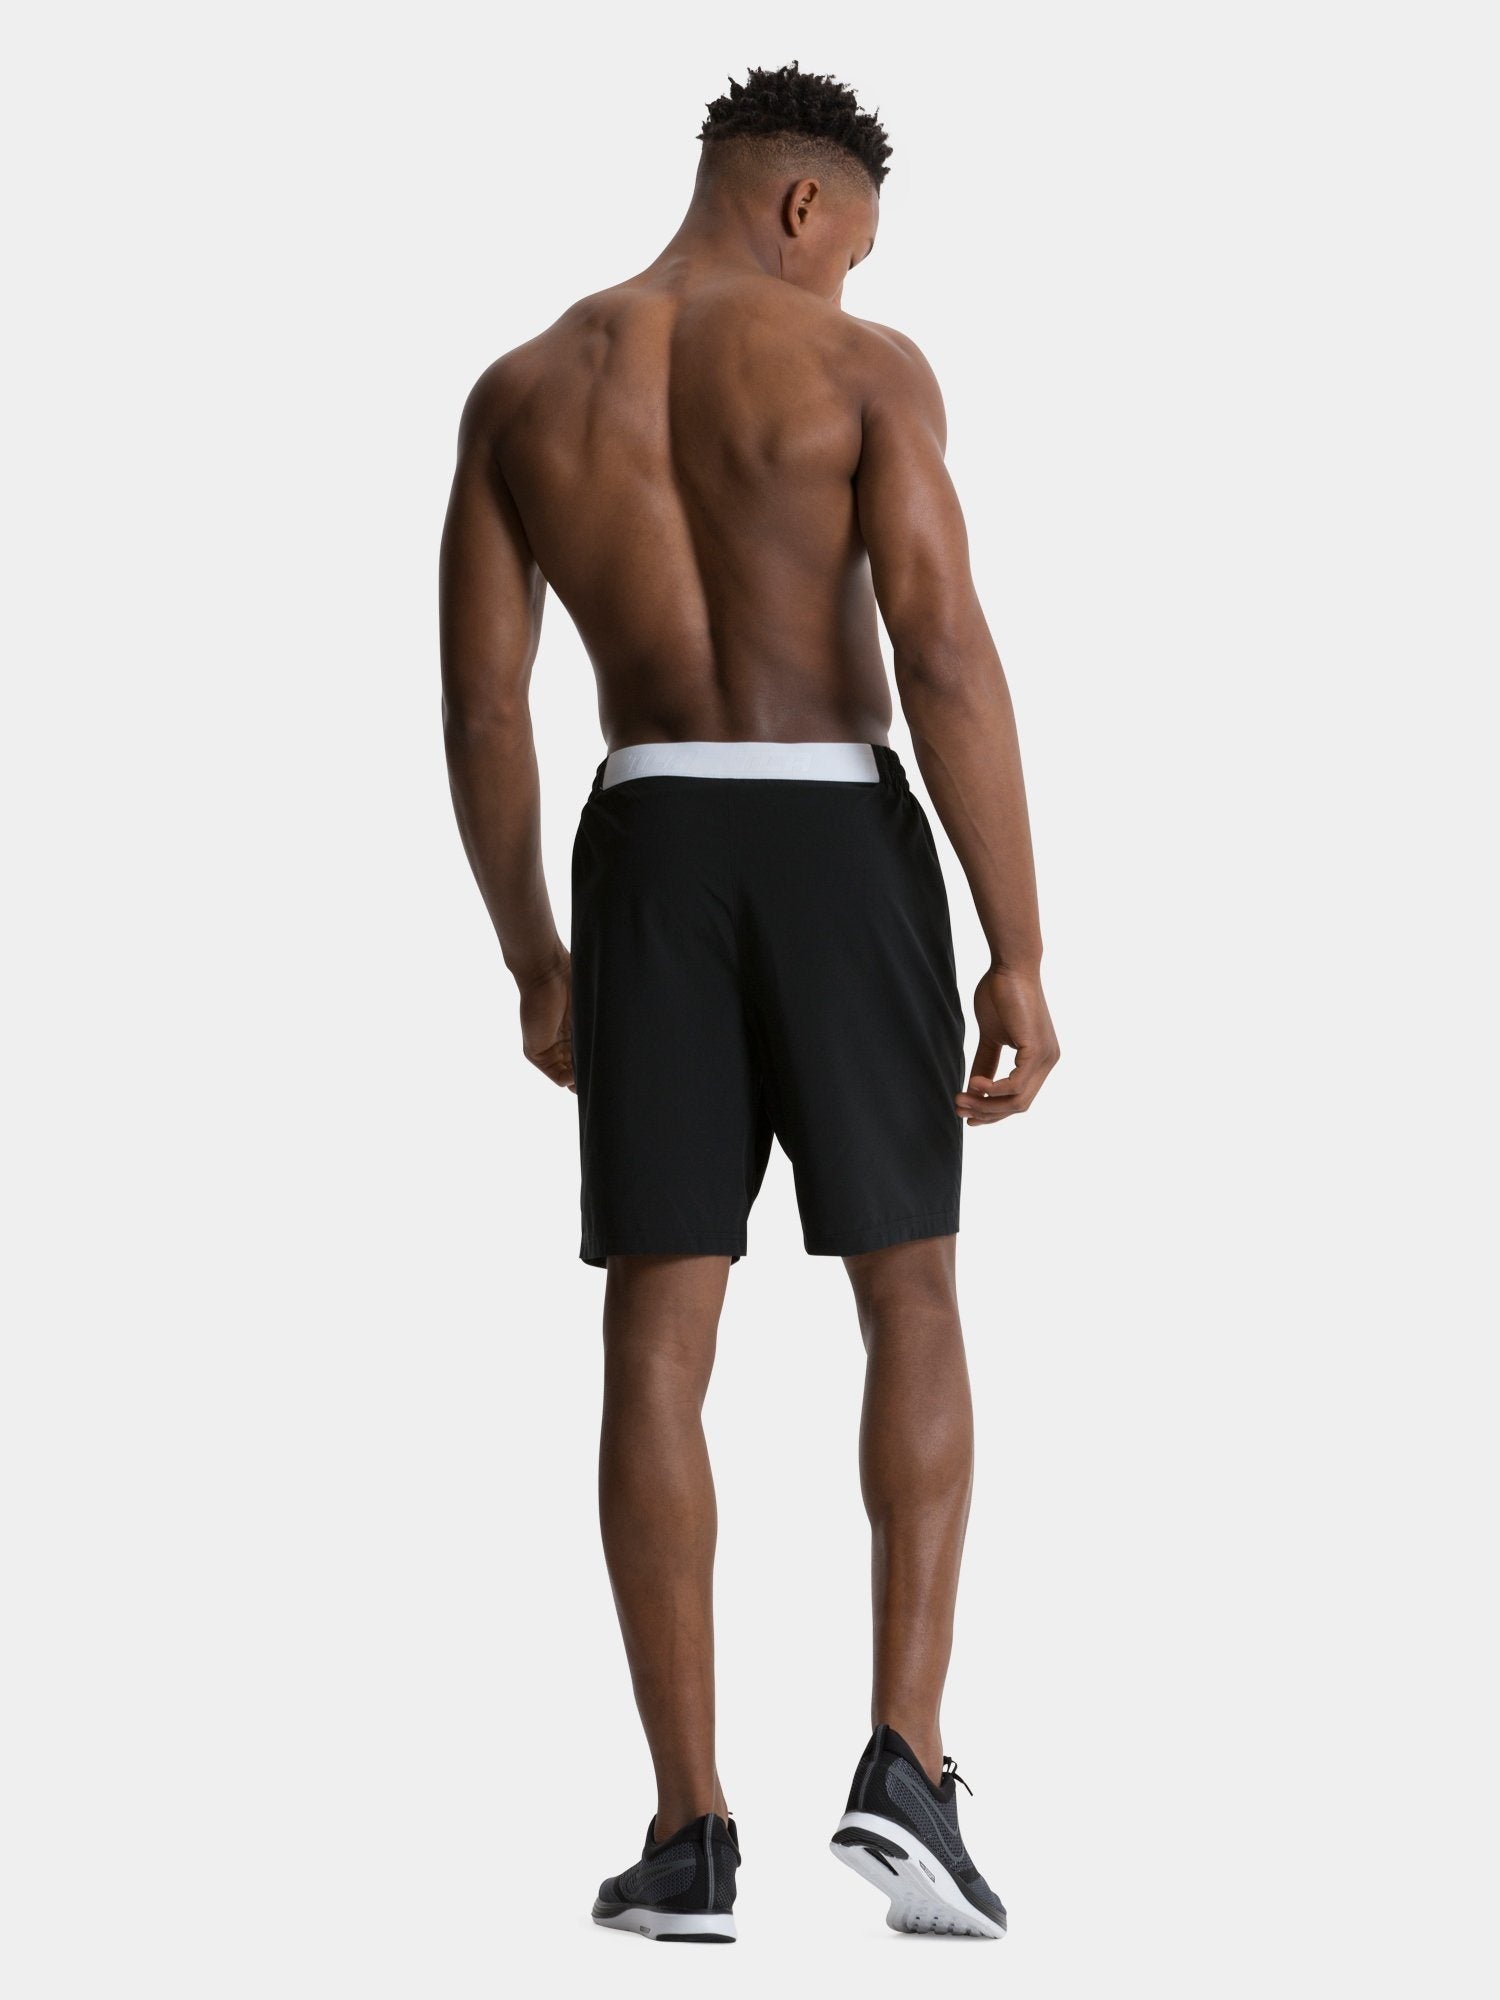 Tek Gear Black Workout Gear Shorts With Zipper Pockets Mesh Sides